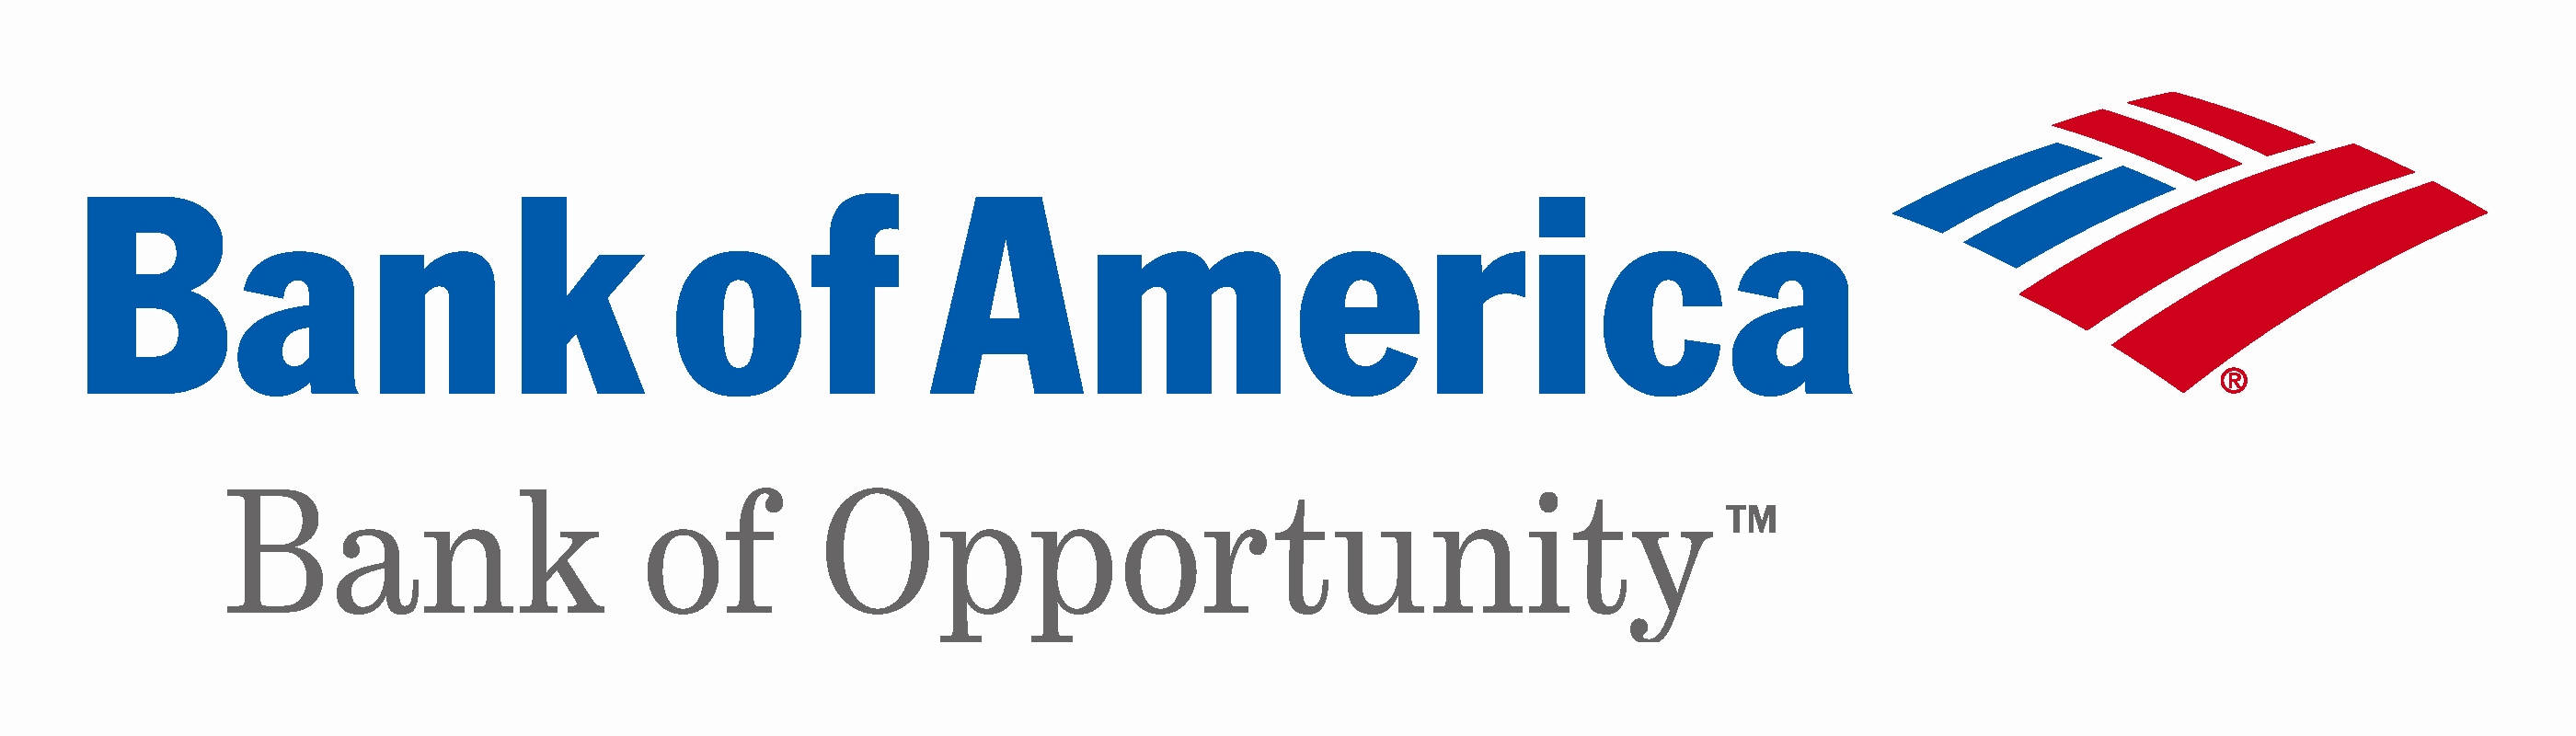 Bancoda América - Banco Da Oportunidade. Papel de Parede